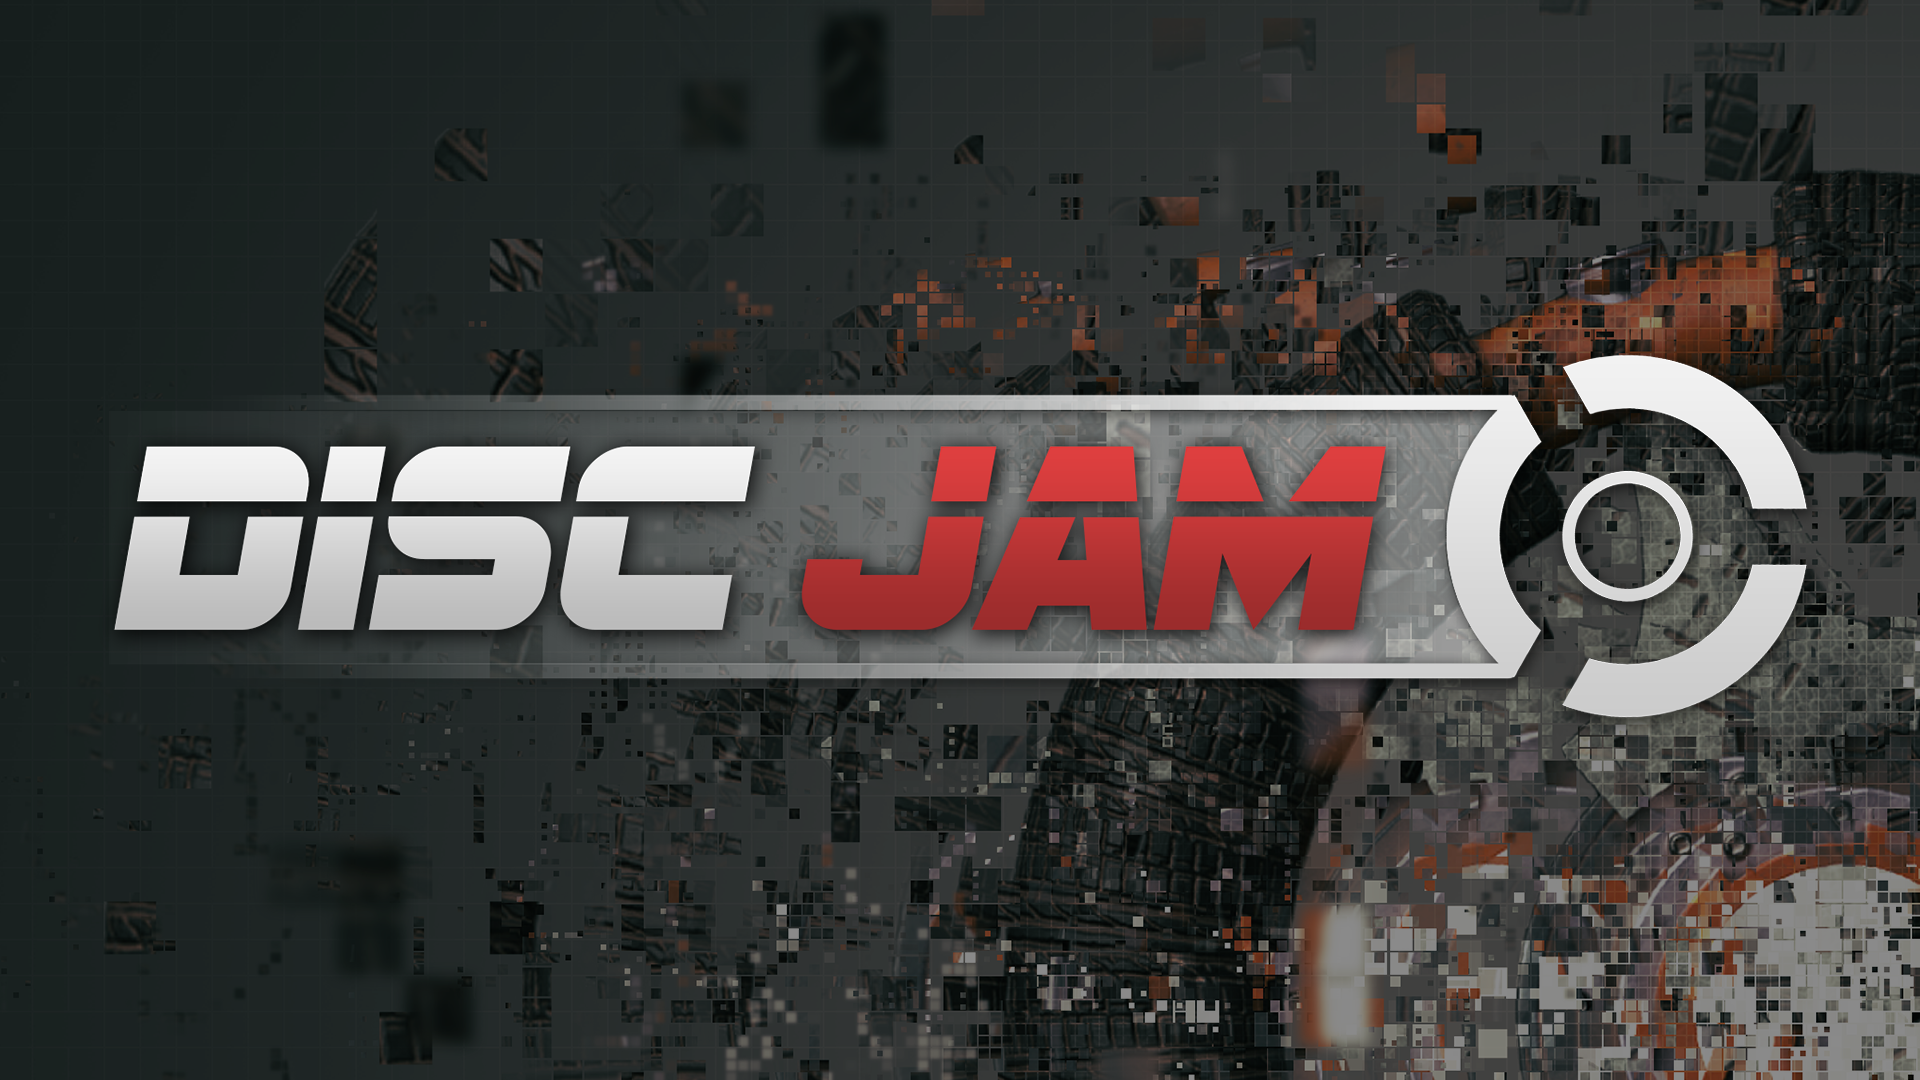 Disc Jam permitirá el juego cruzado entra PlayStation 4 y PC